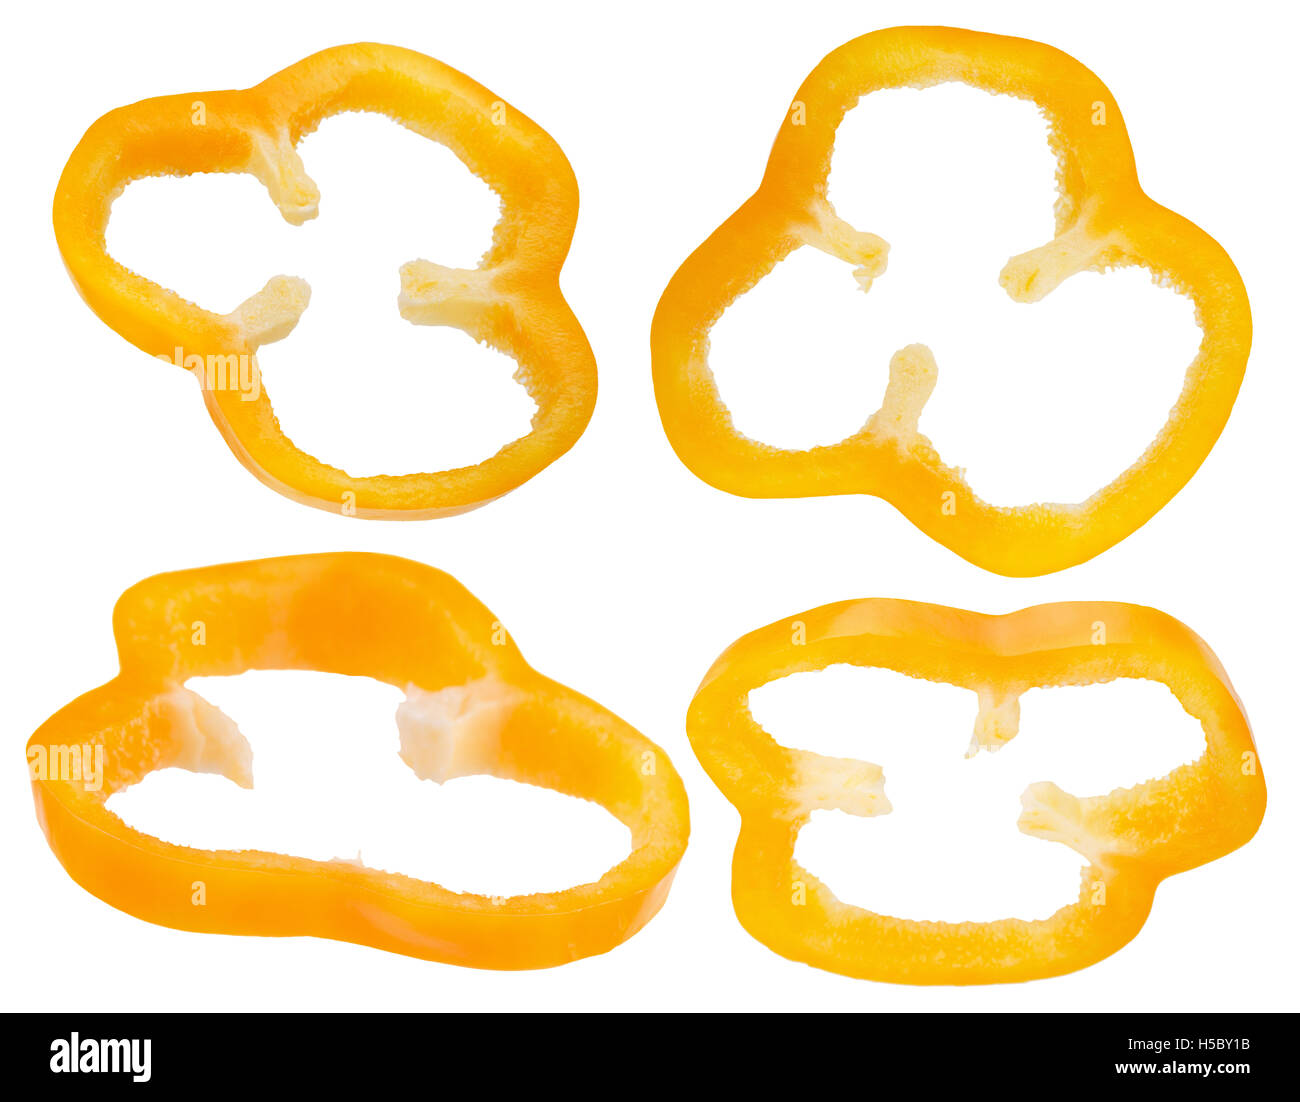 Colección de pimienta rodajas de naranja aislado en el fondo blanco. Foto de stock